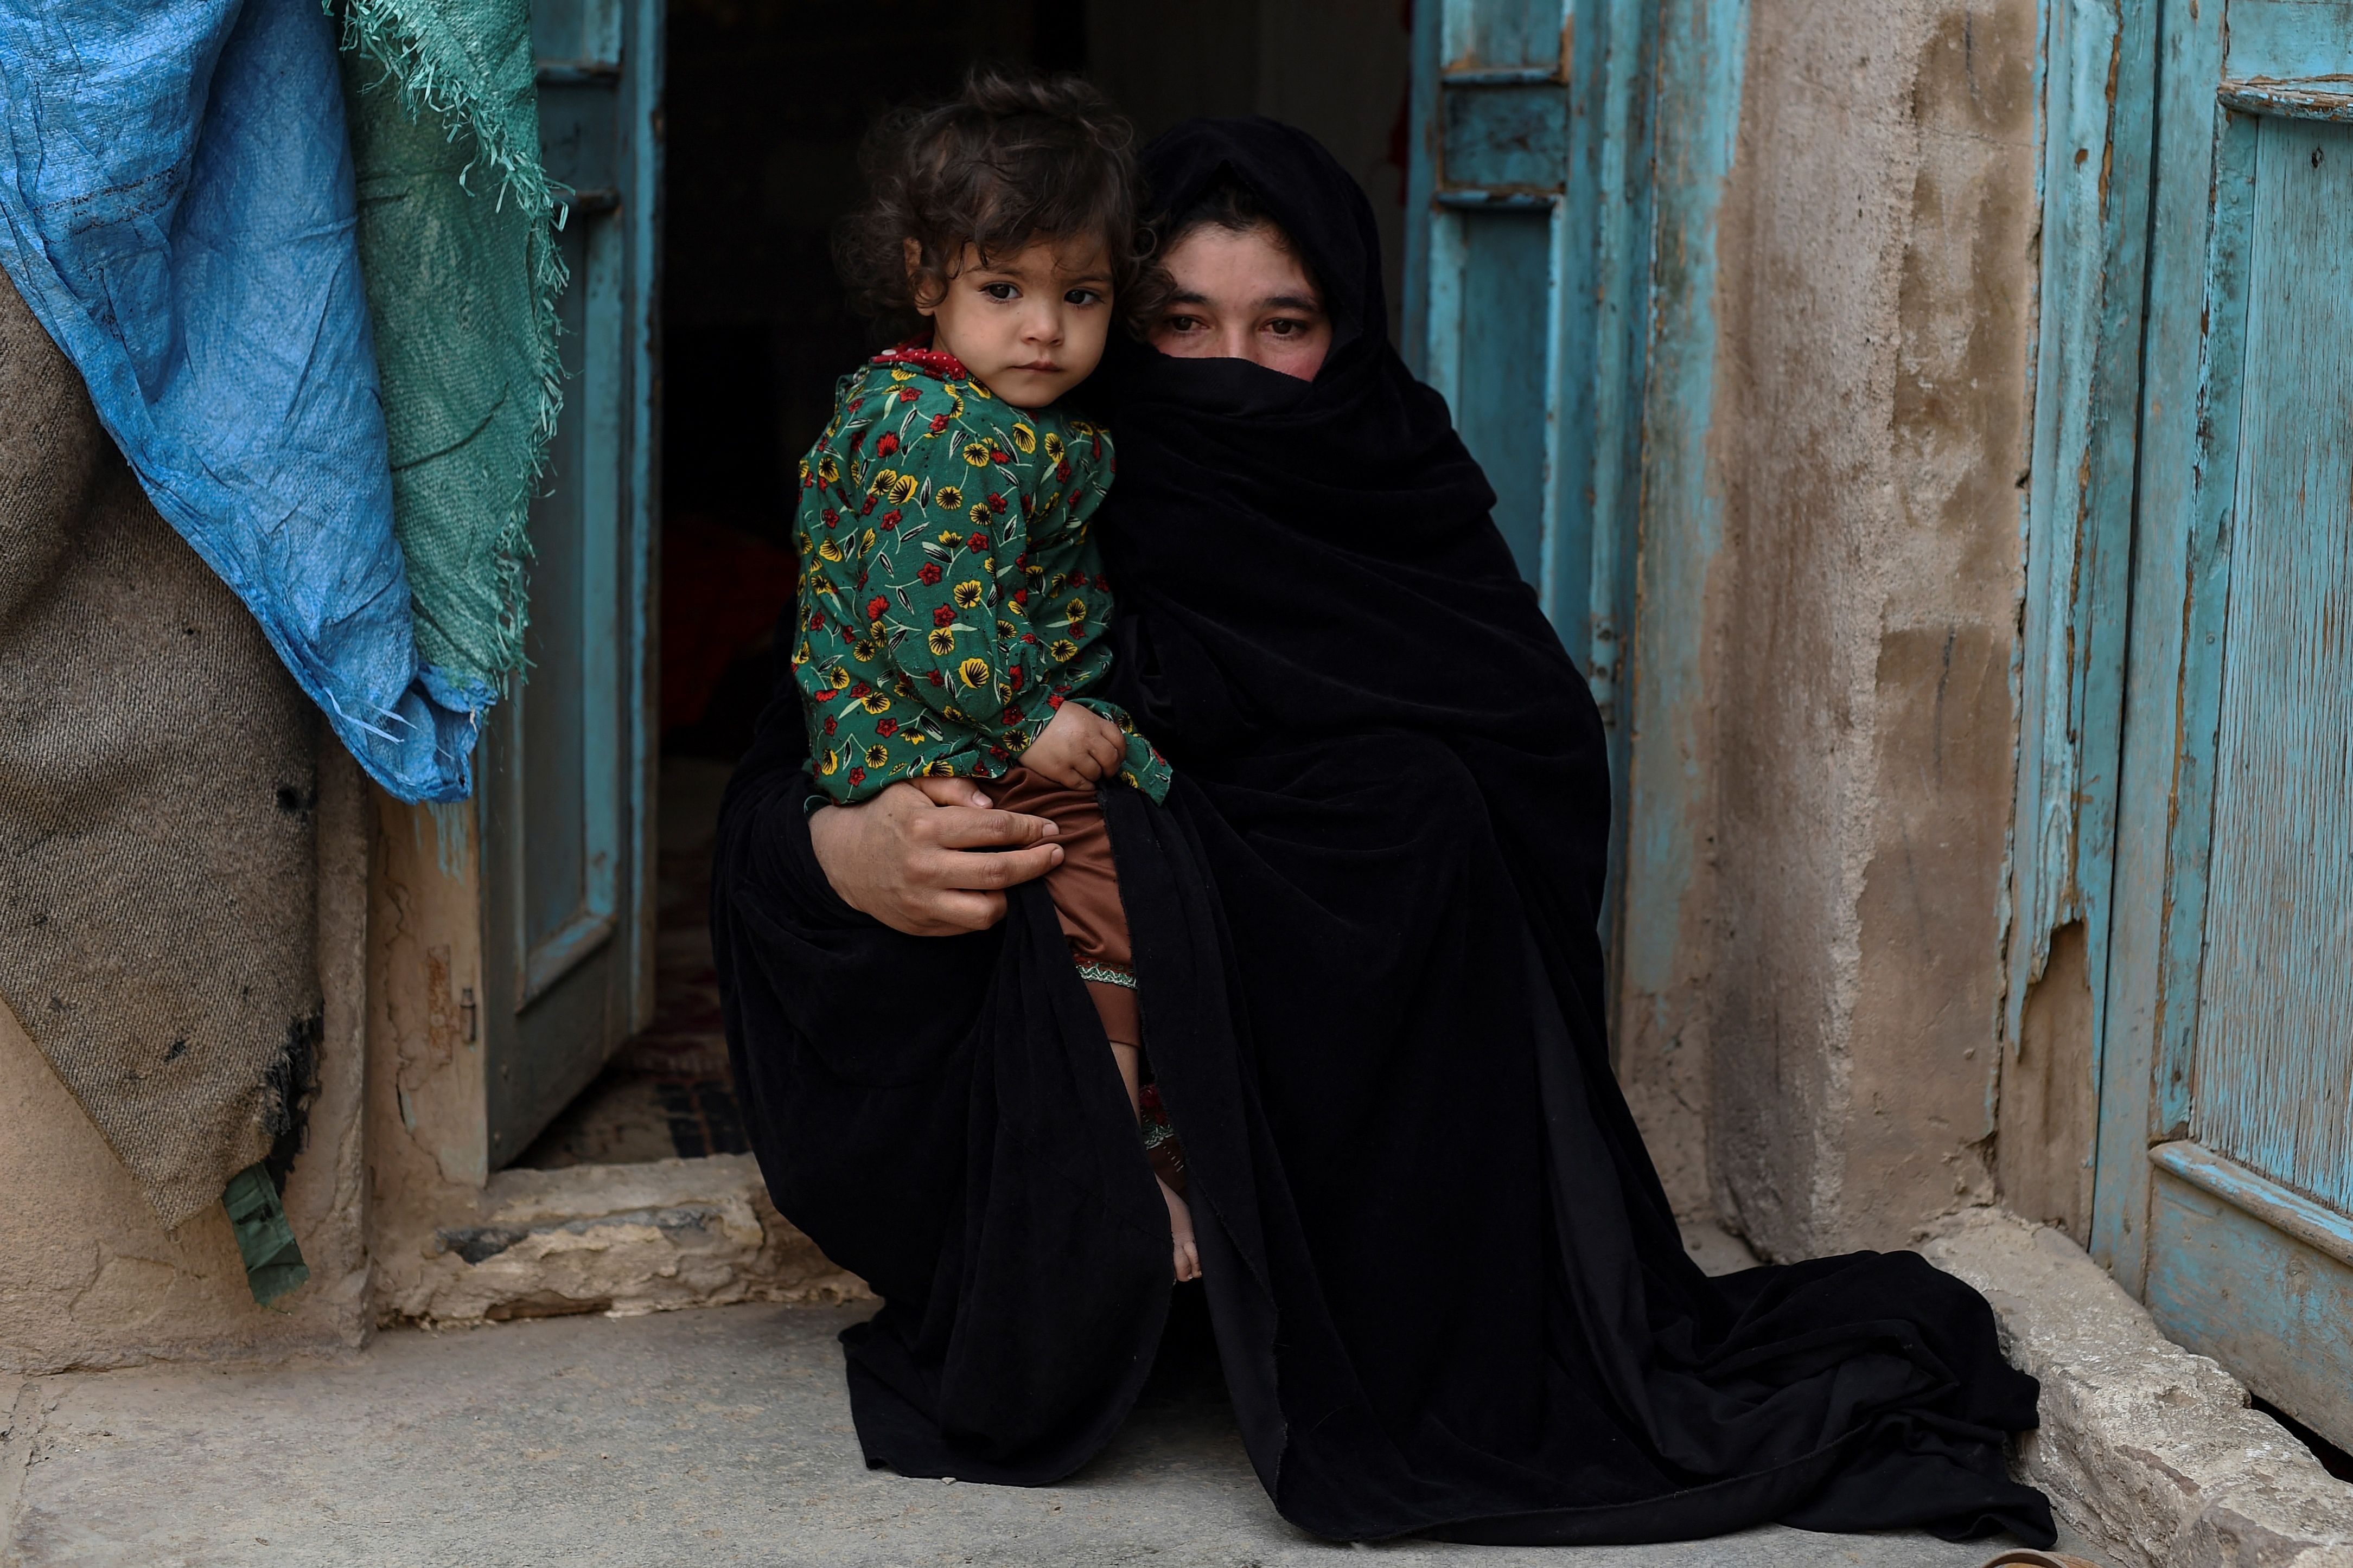 Aziza (t.h.) sa i februar at hun ville selge ei nyre for å hjelpe familien sin økonomisk. Her poserer hun sammen med datteren Parwina utenfor hjemmet i Herat.